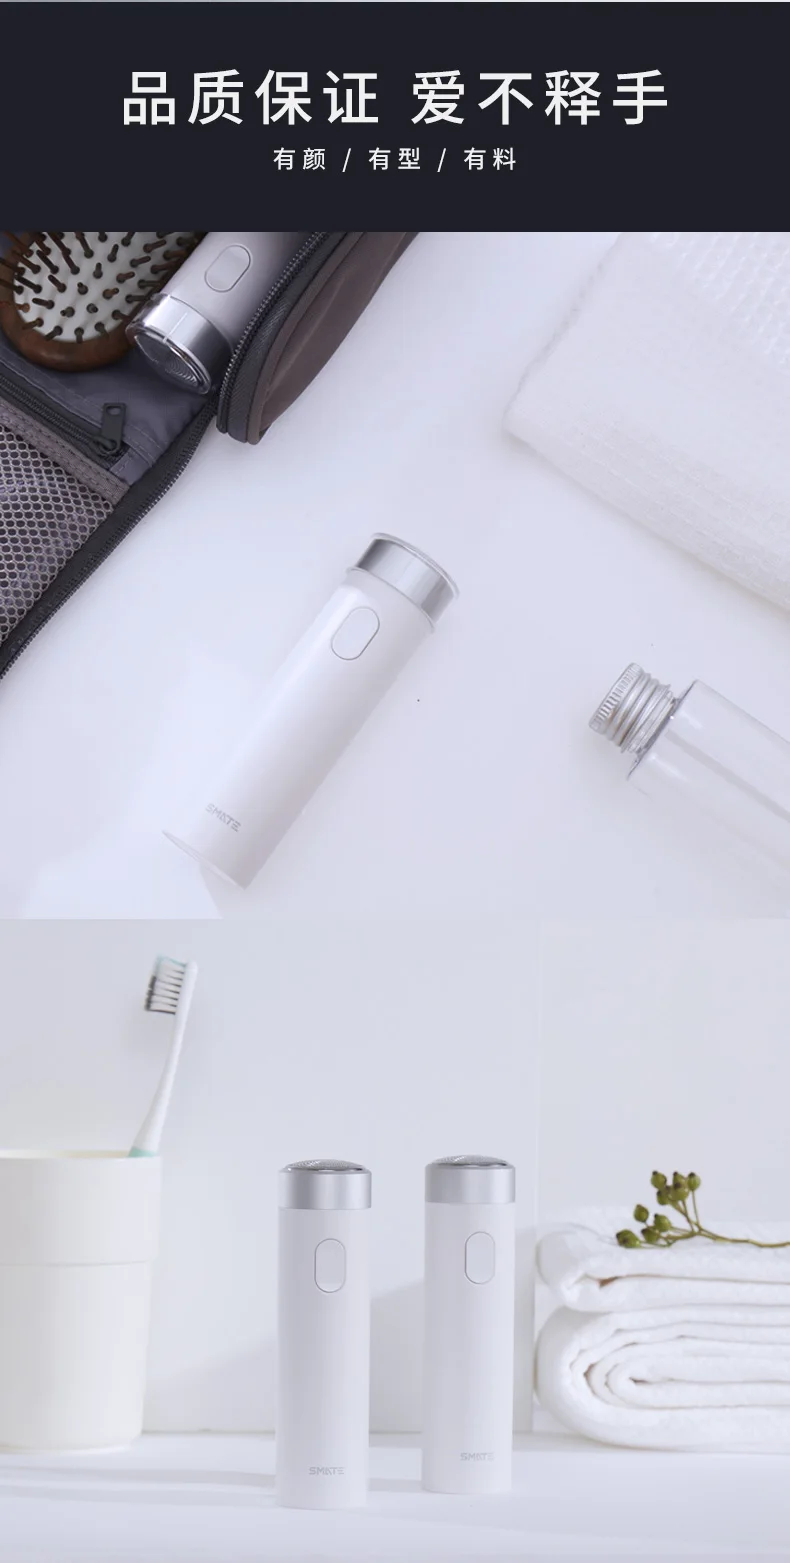 Для бровей электробритва Для мужчин бритвы мини Портативный тонкие лезвия эластичный нож чистая USB быстрая зарядка всего тела стирка